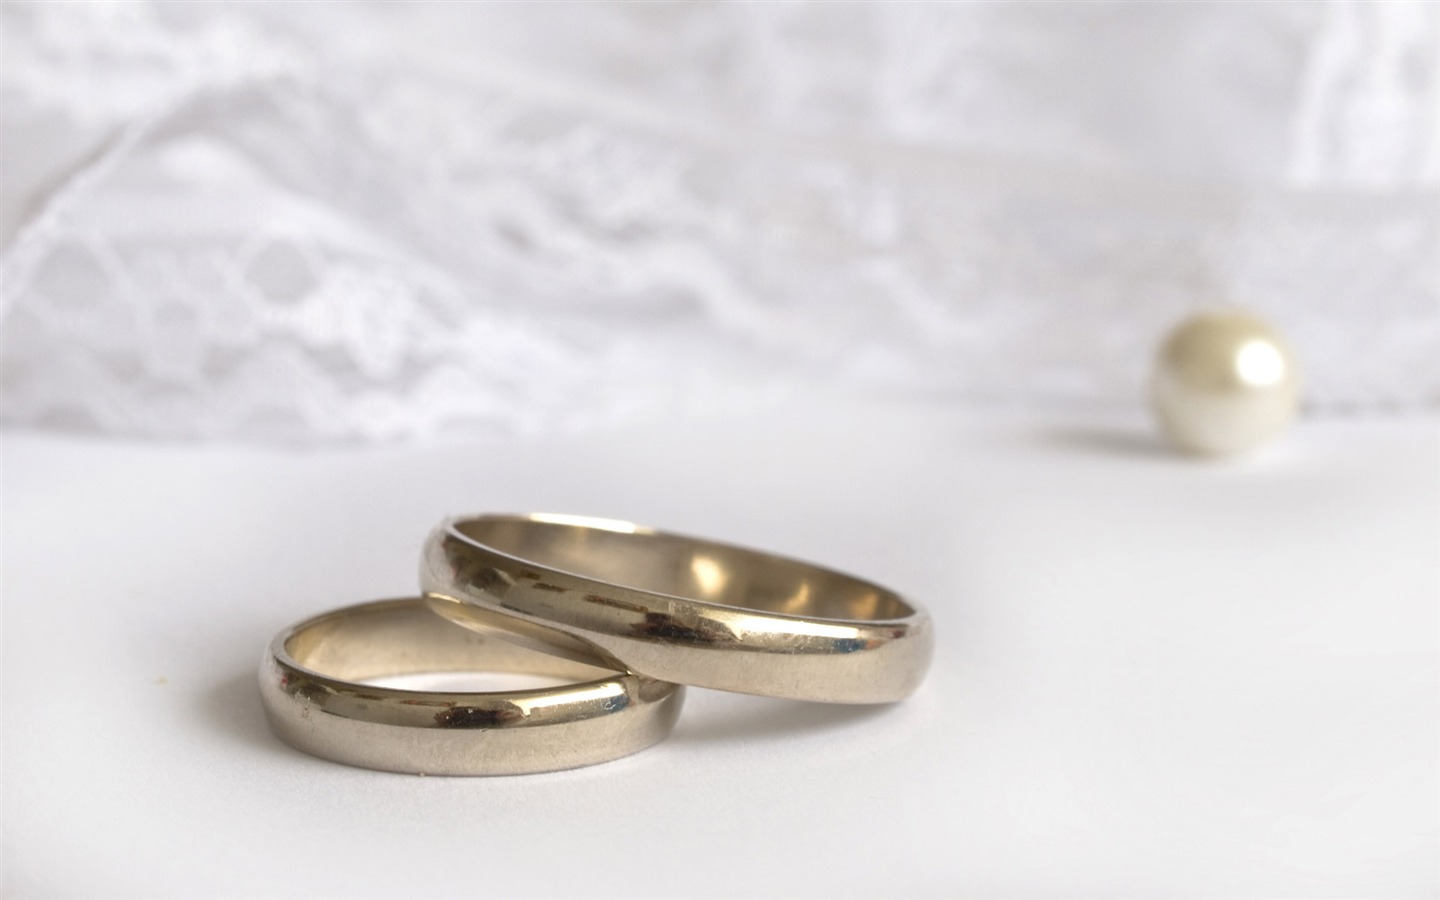 Mariage et papier peint anneau de mariage (2) #3 - 1440x900